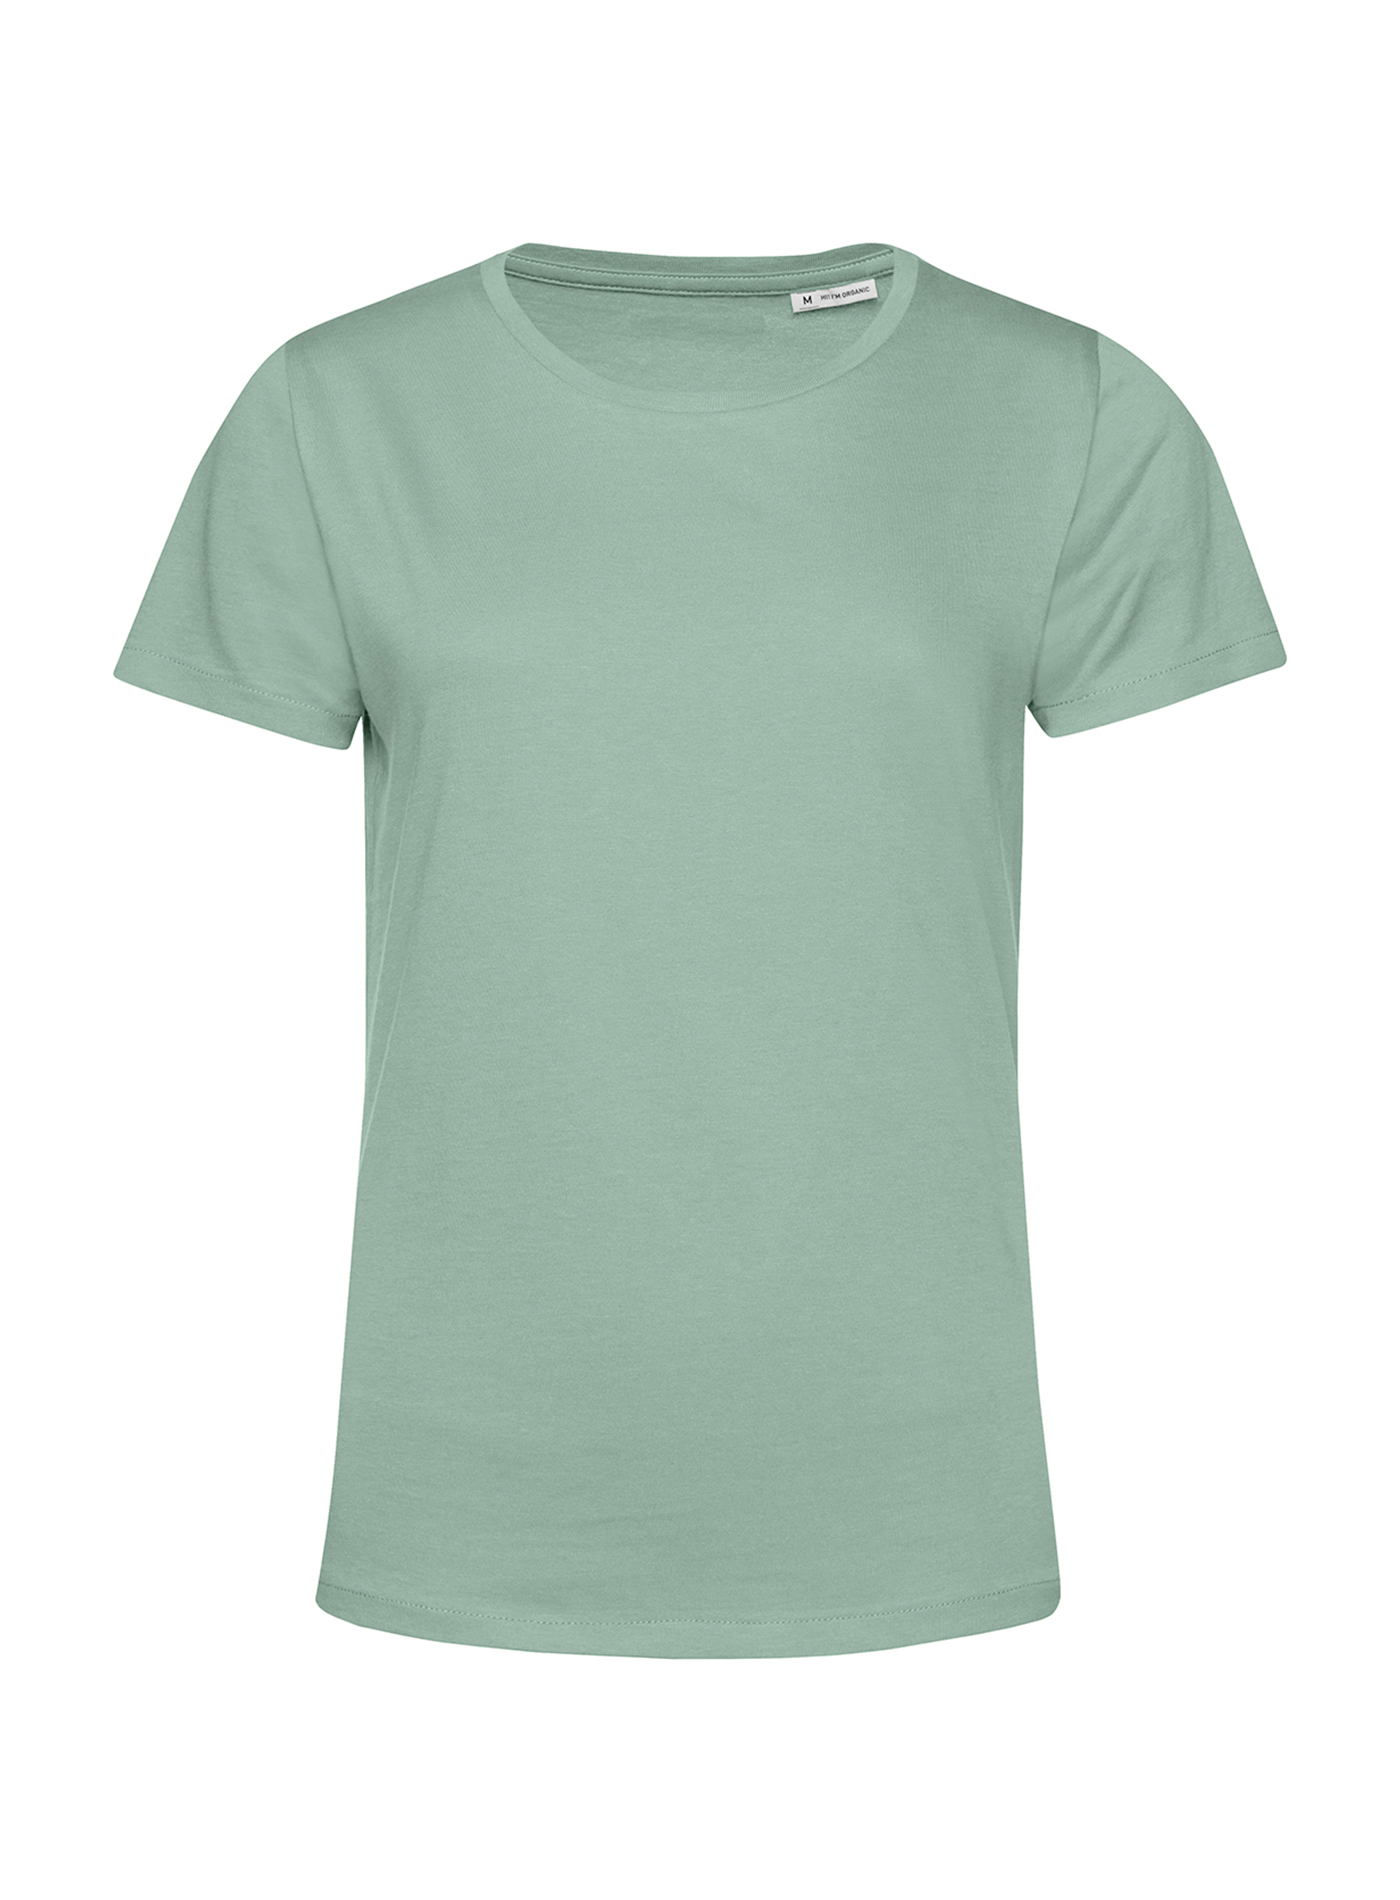 Dámské tričko B&C Collection Organic - Mentolově zelená S